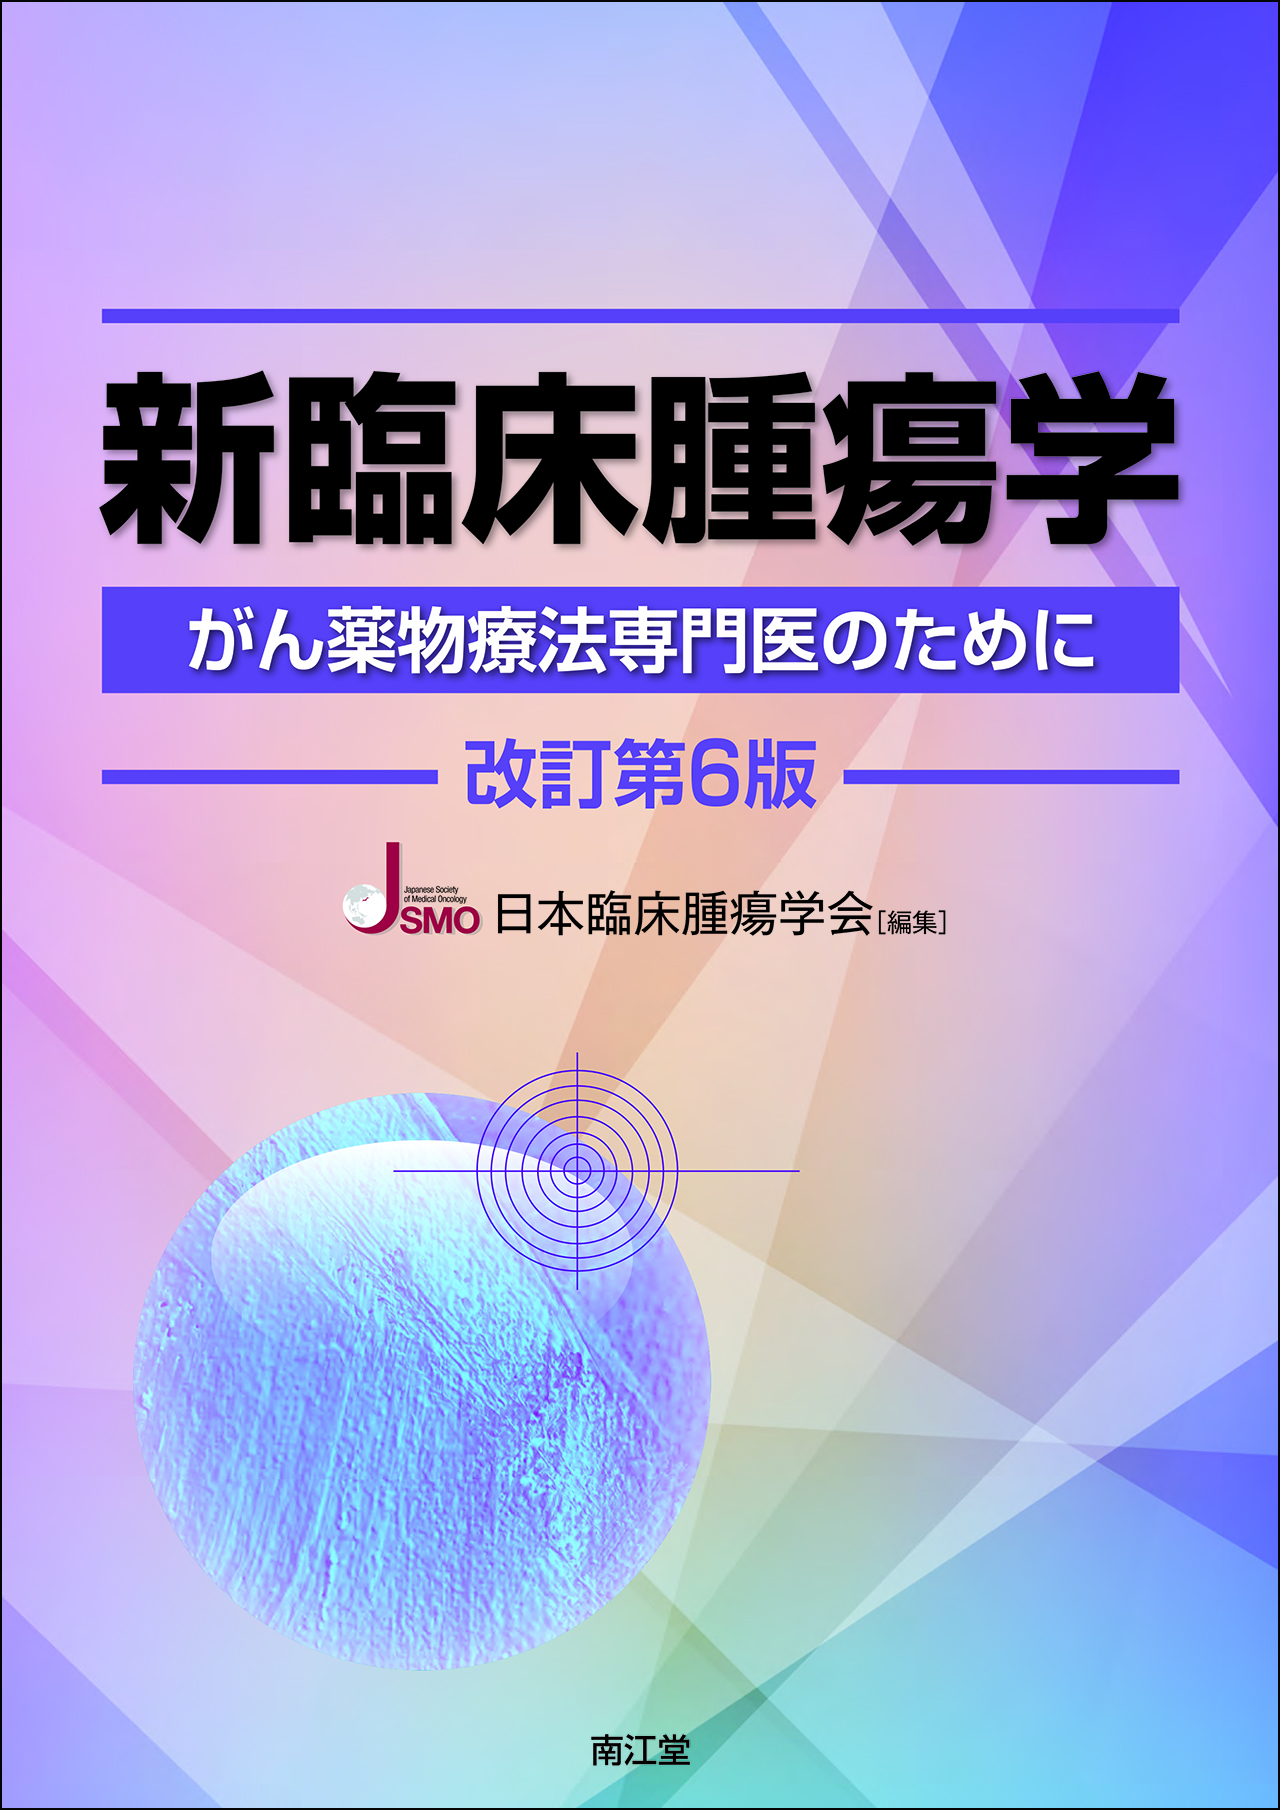 新臨床腫瘍学 改訂第6版【電子版】 | 医書.jp